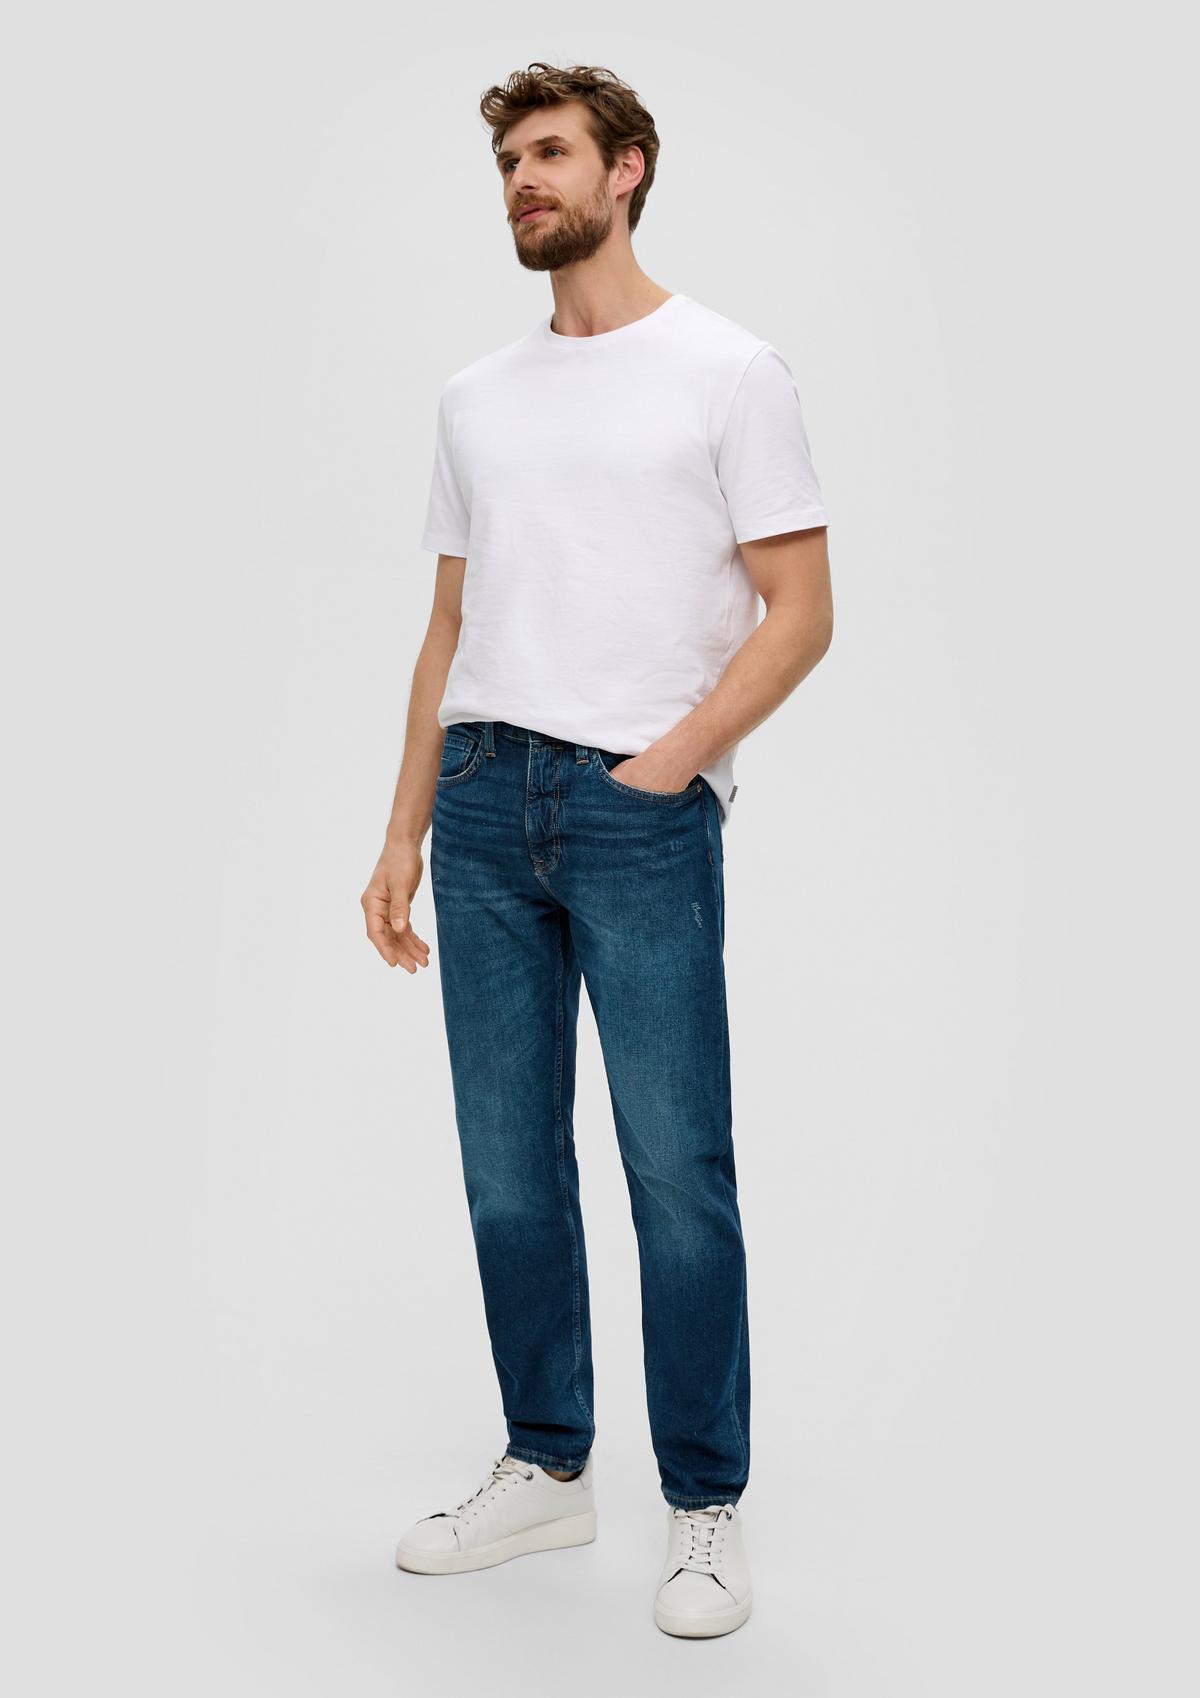 s.Oliver Jeans hlače / kroj Regular Fit / High Rise / Tapered Leg